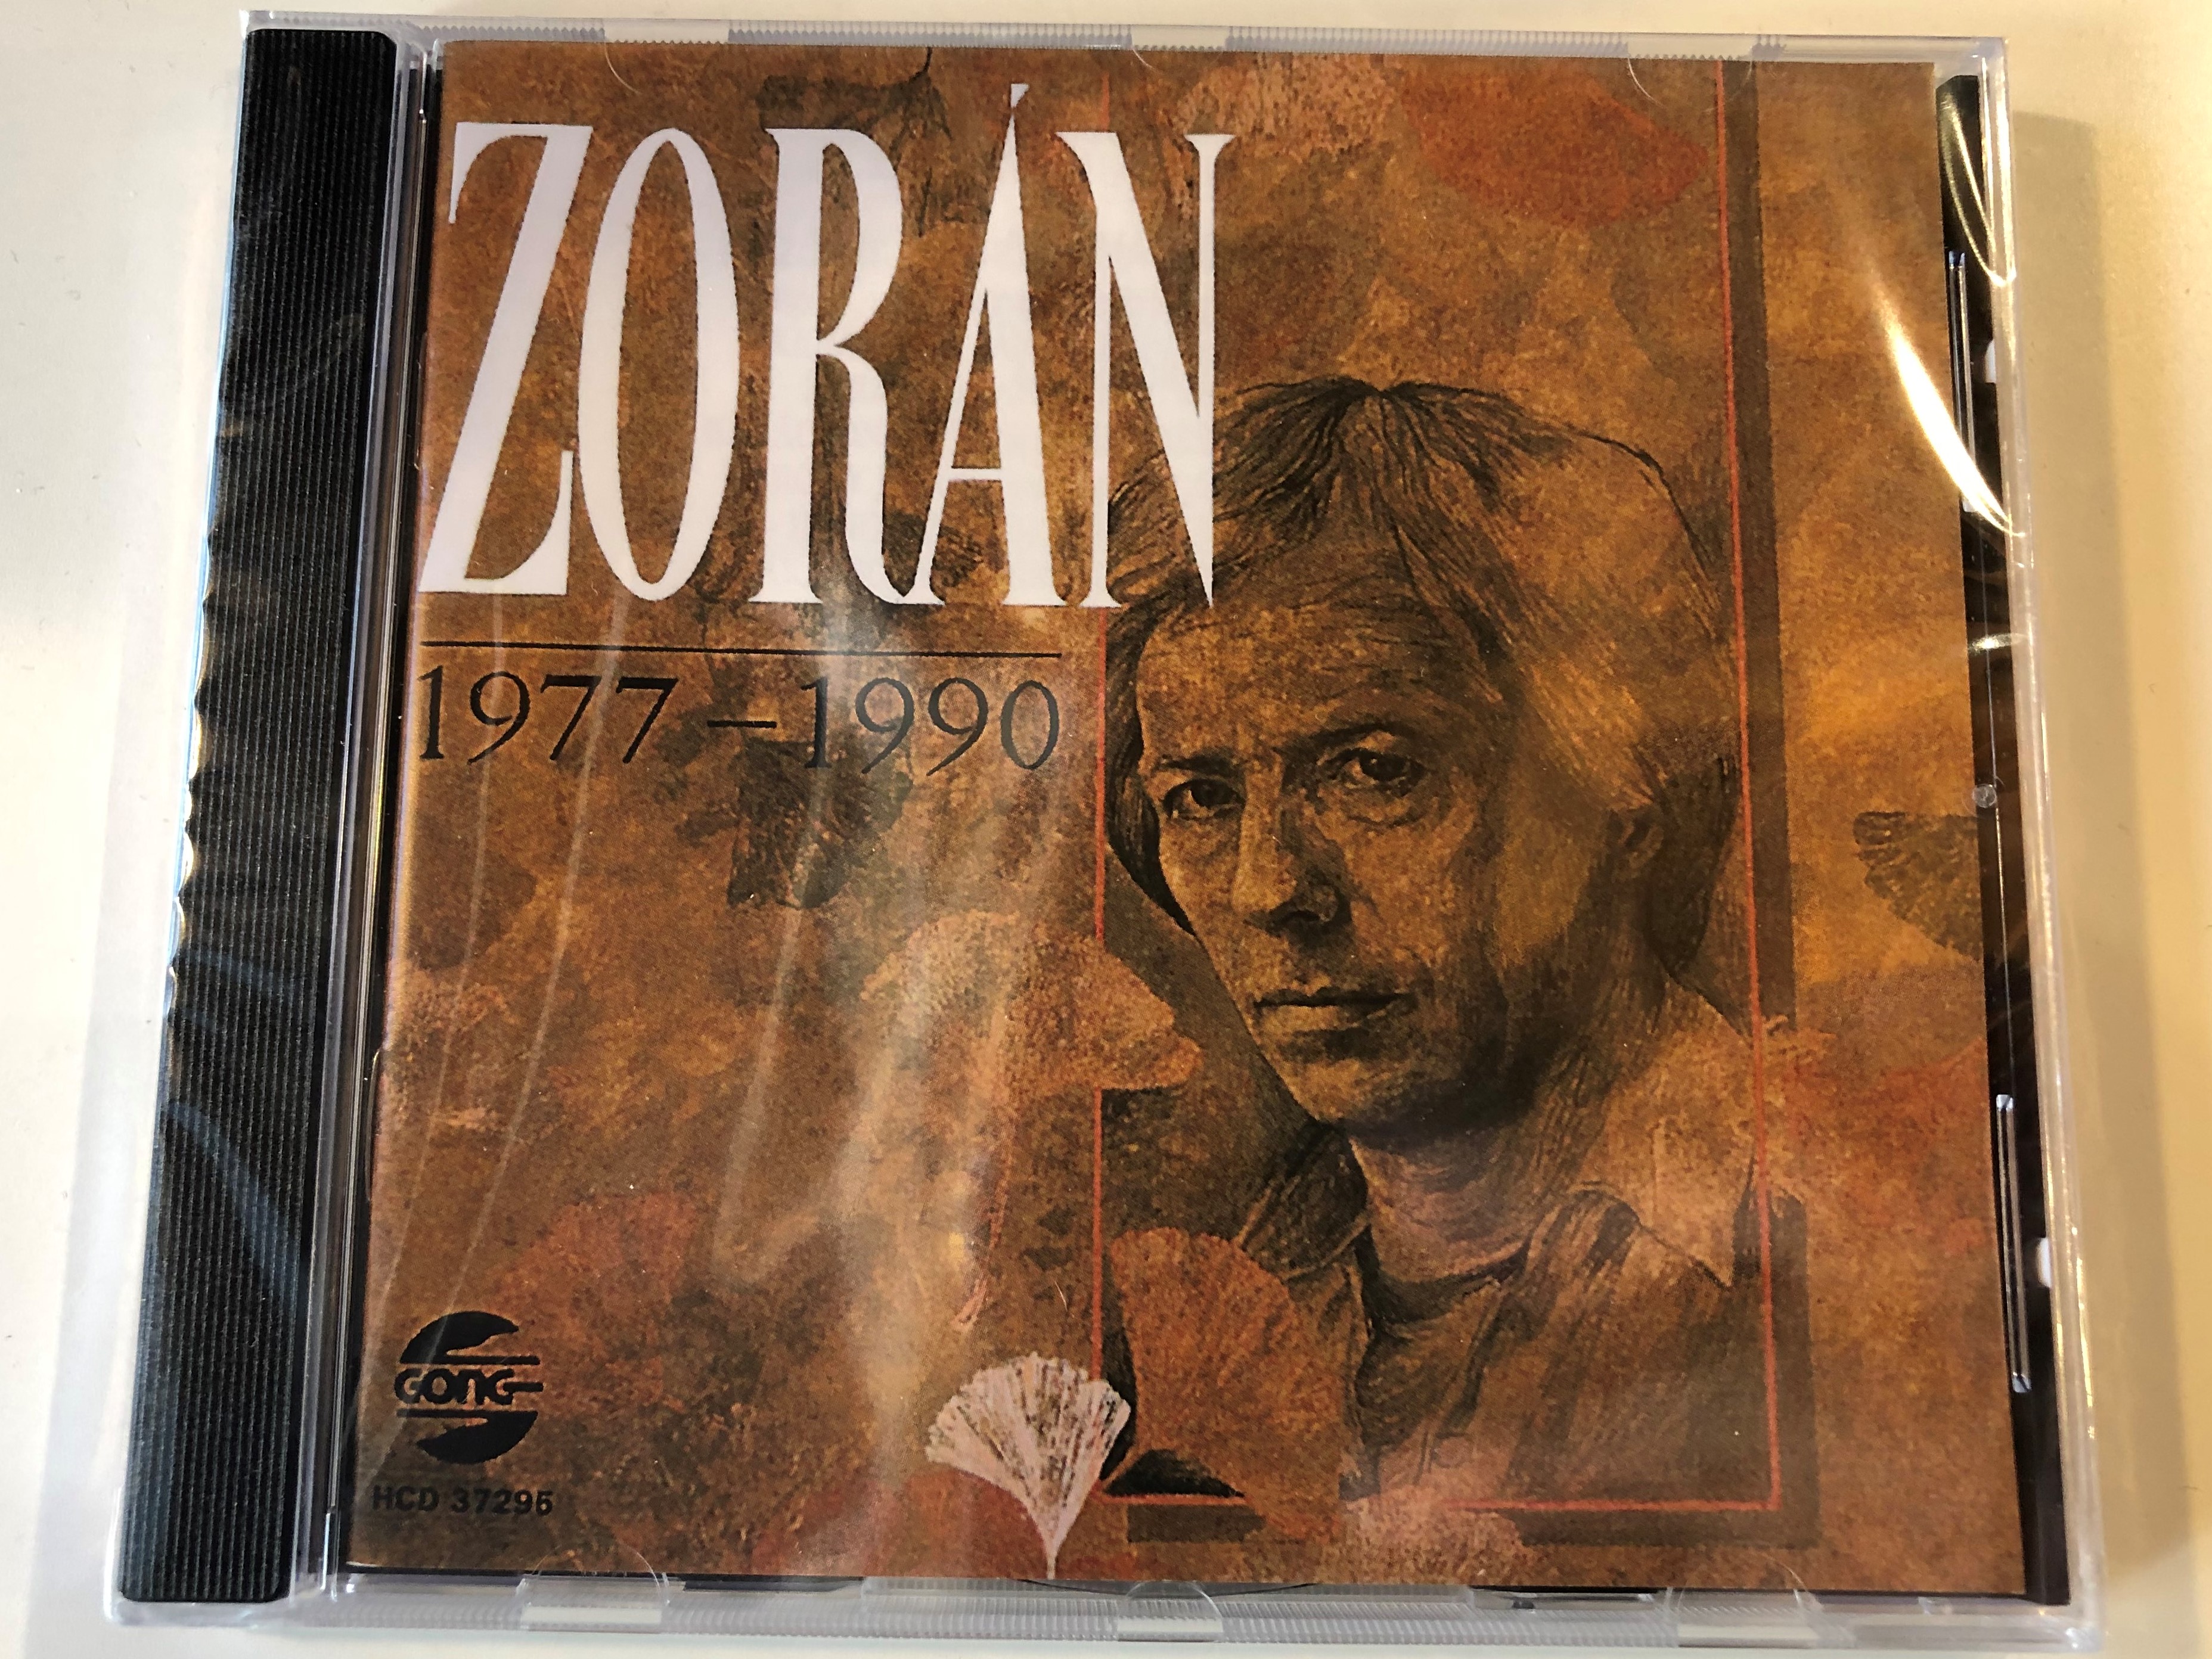 zor-n-1977-1990-gong-audio-cd-1990-hcd-37295-1-.jpg